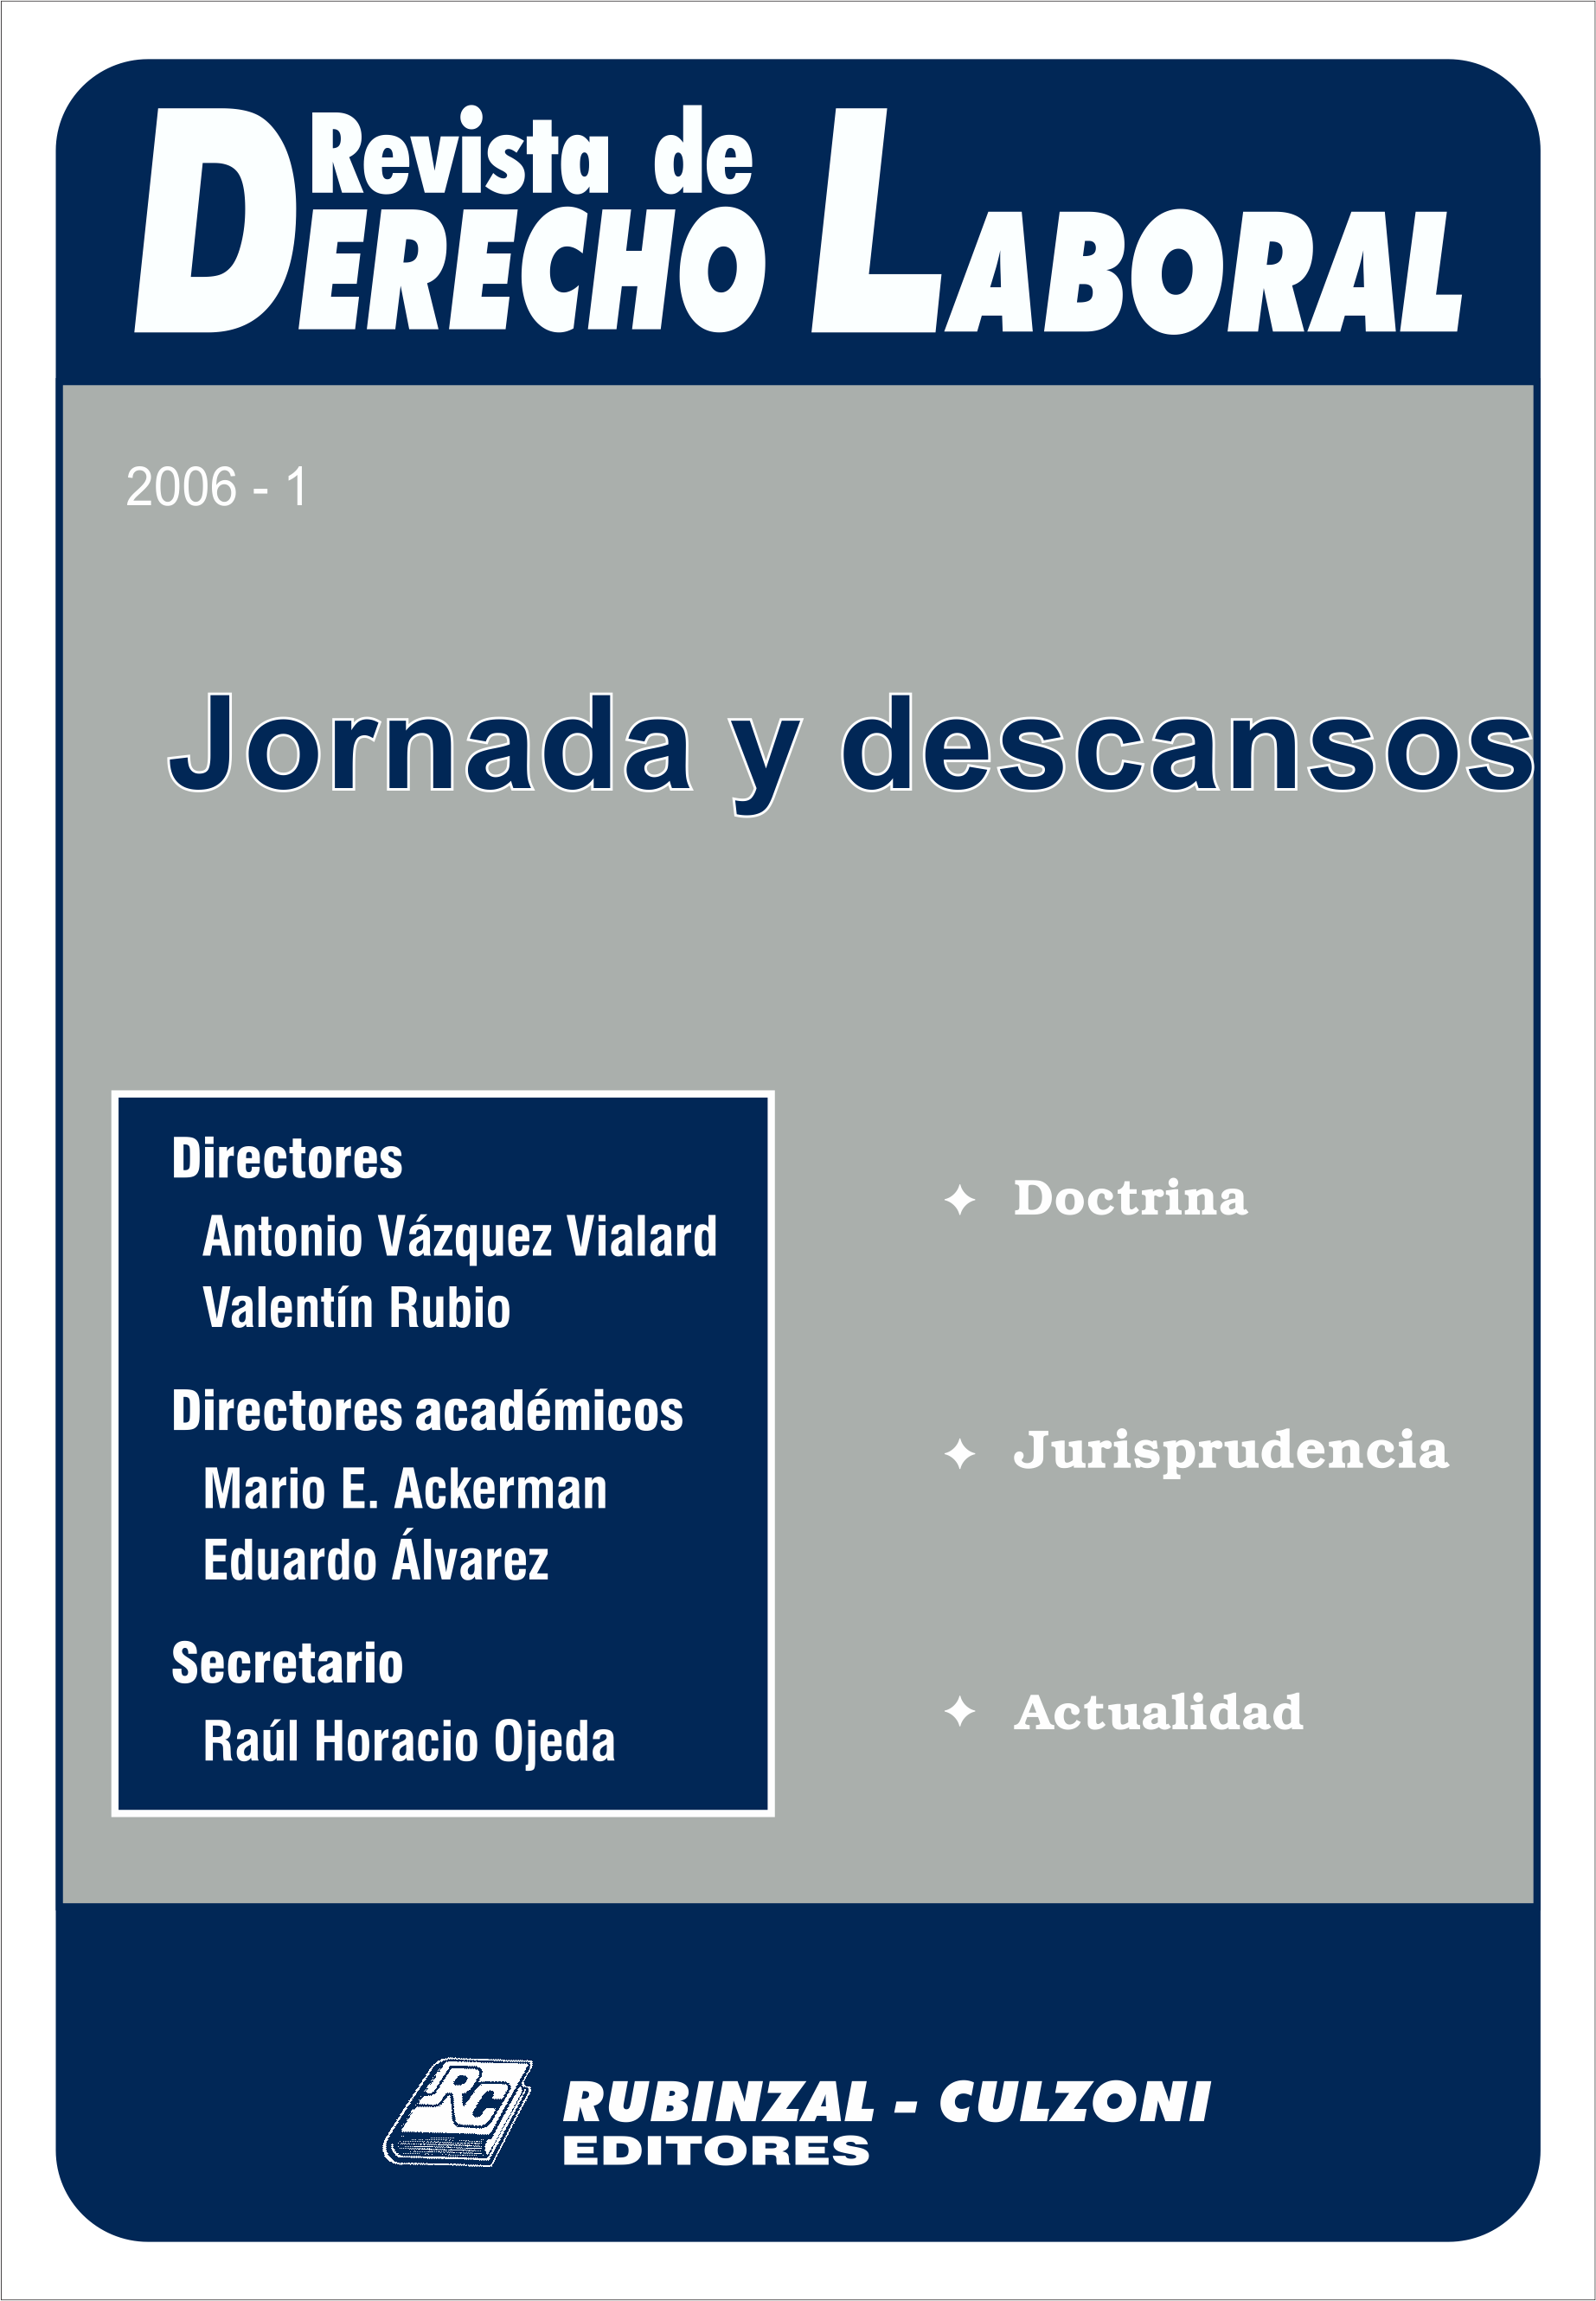 Revista de Derecho Laboral - Jornada y descansos.